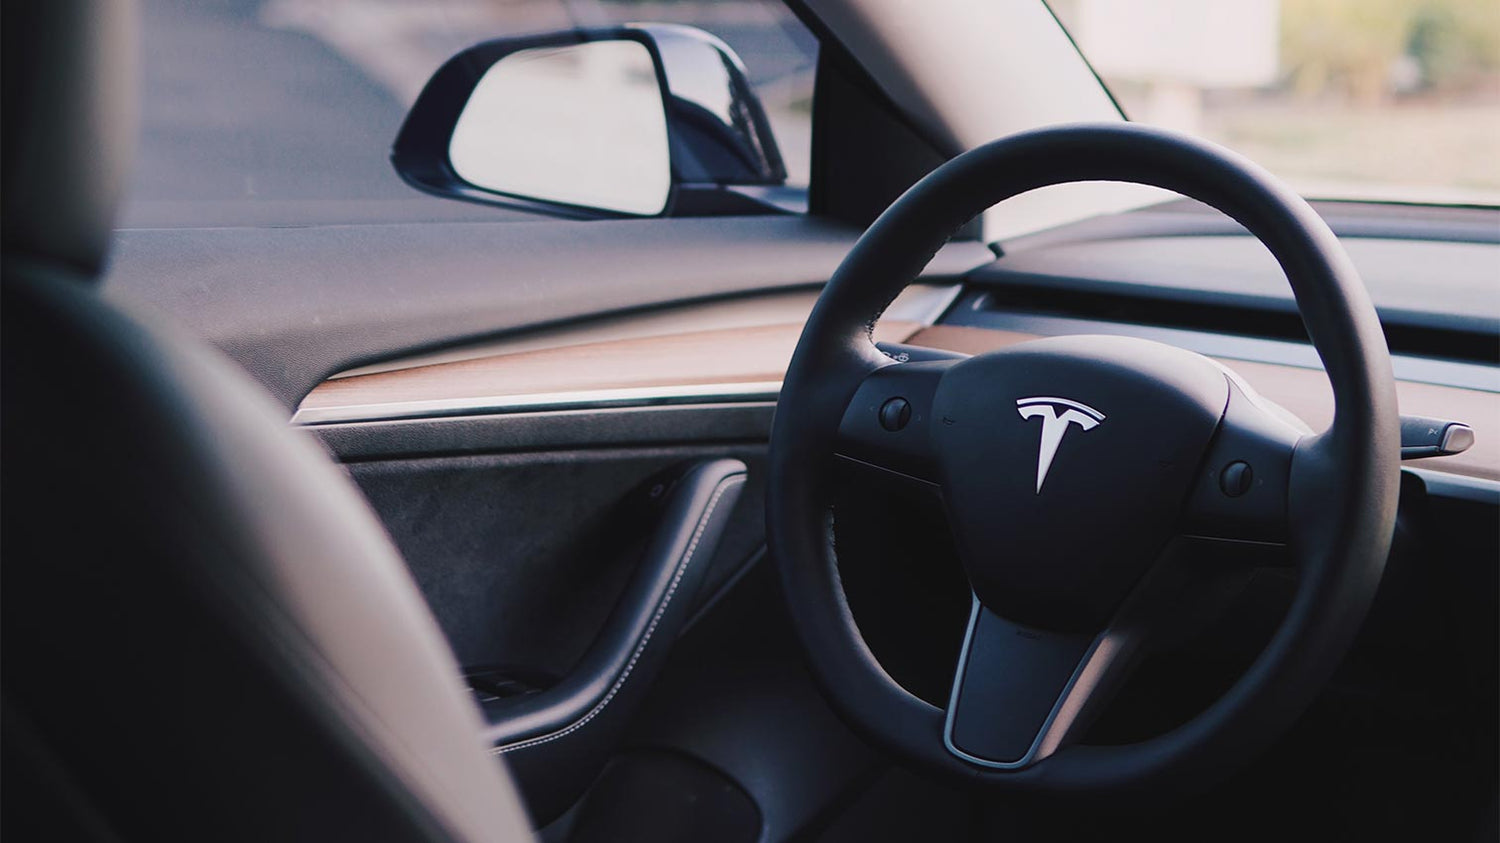 Zubehör-Vorschläge: Die 4 wichtigsten Extras für Tesla Model 3 und